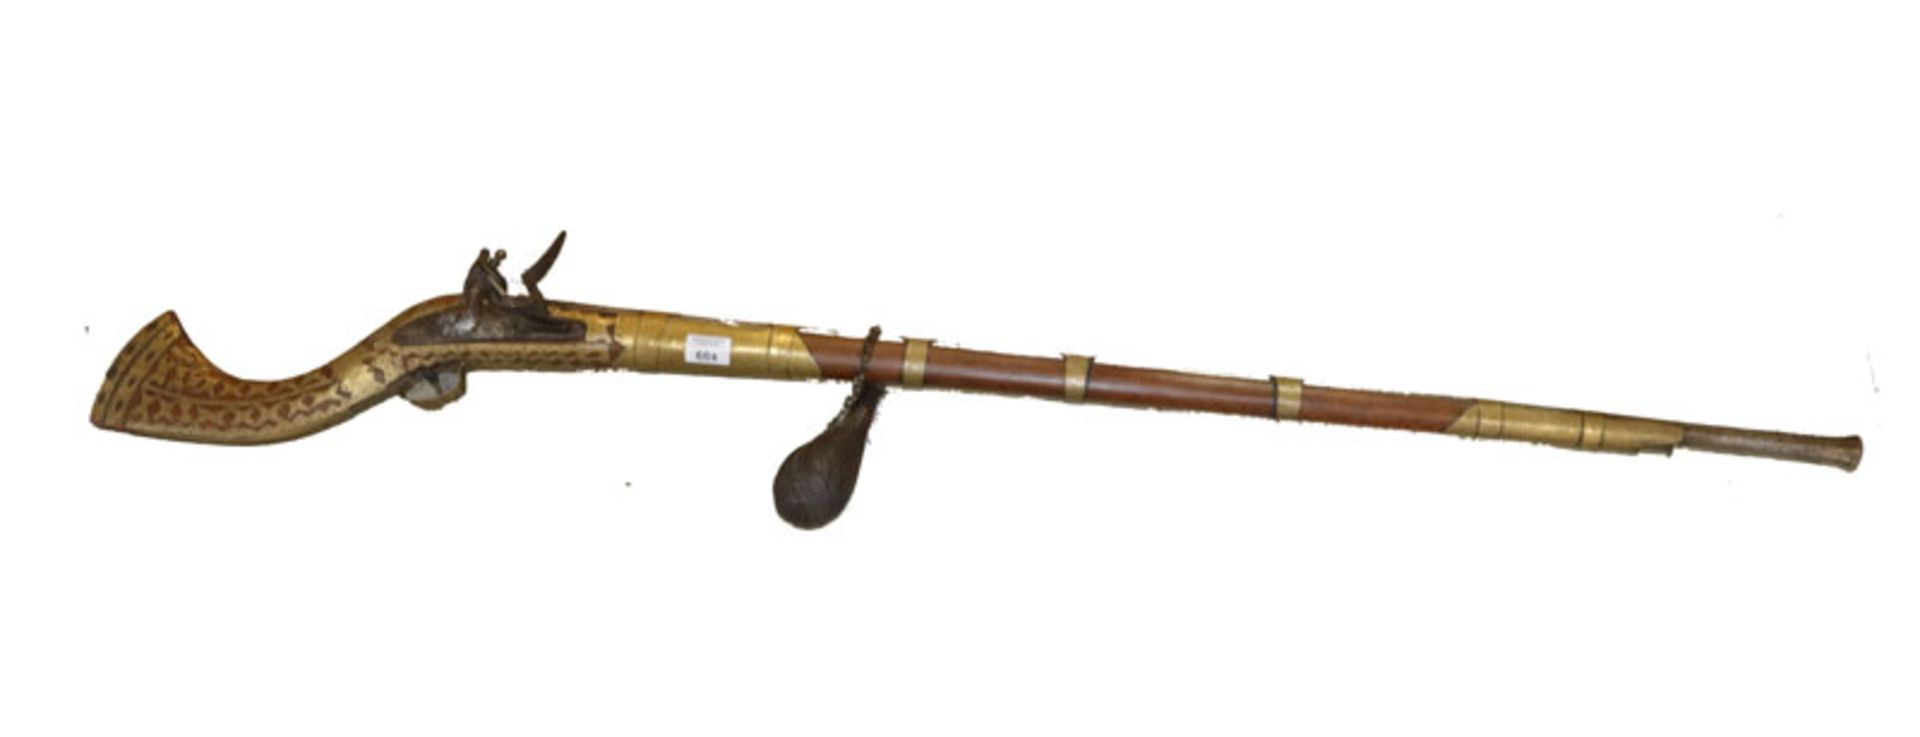 Arabische Muskete, schön verziert, L 153 cm, mit Pulverflasche, Altersspuren, nicht funktionsfähig